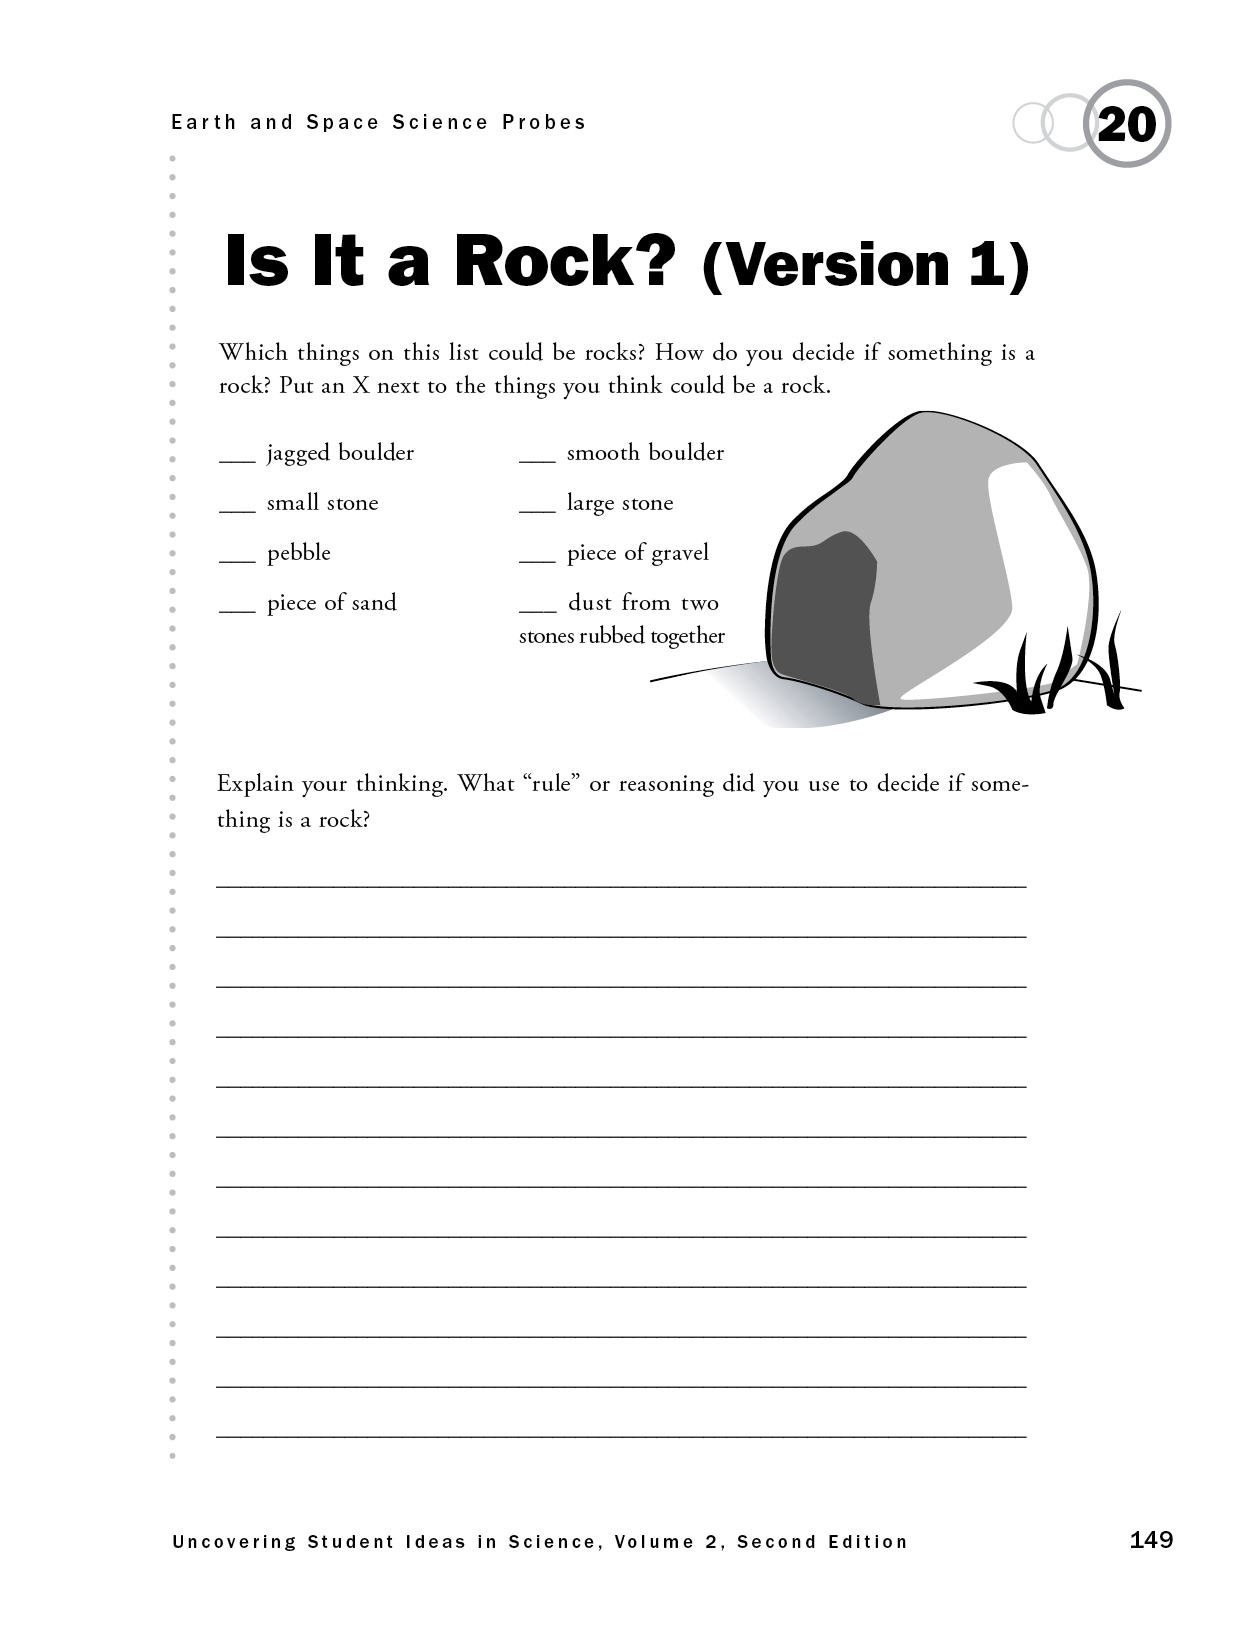 Is It a Rock? (Version 1)